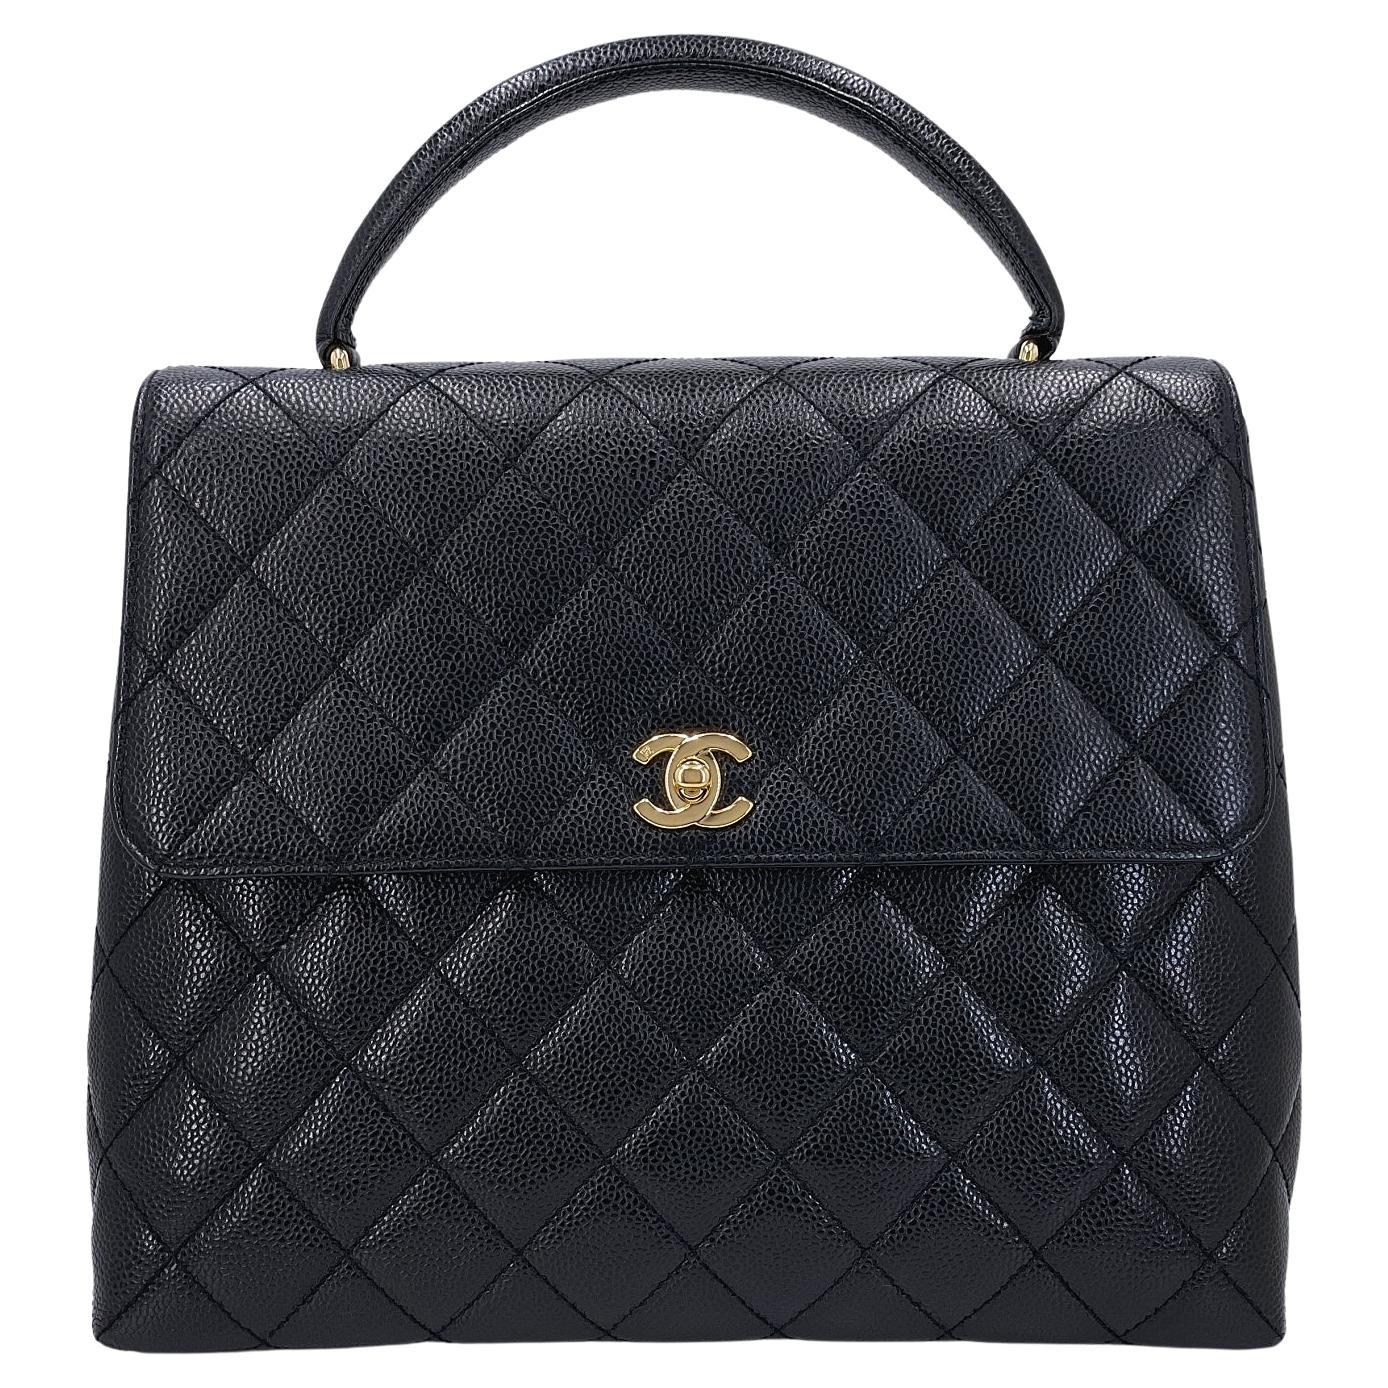 Chanel 2002 Vintage Black Caviar Classic Kelly Bag 24k GHW 68013 en vente